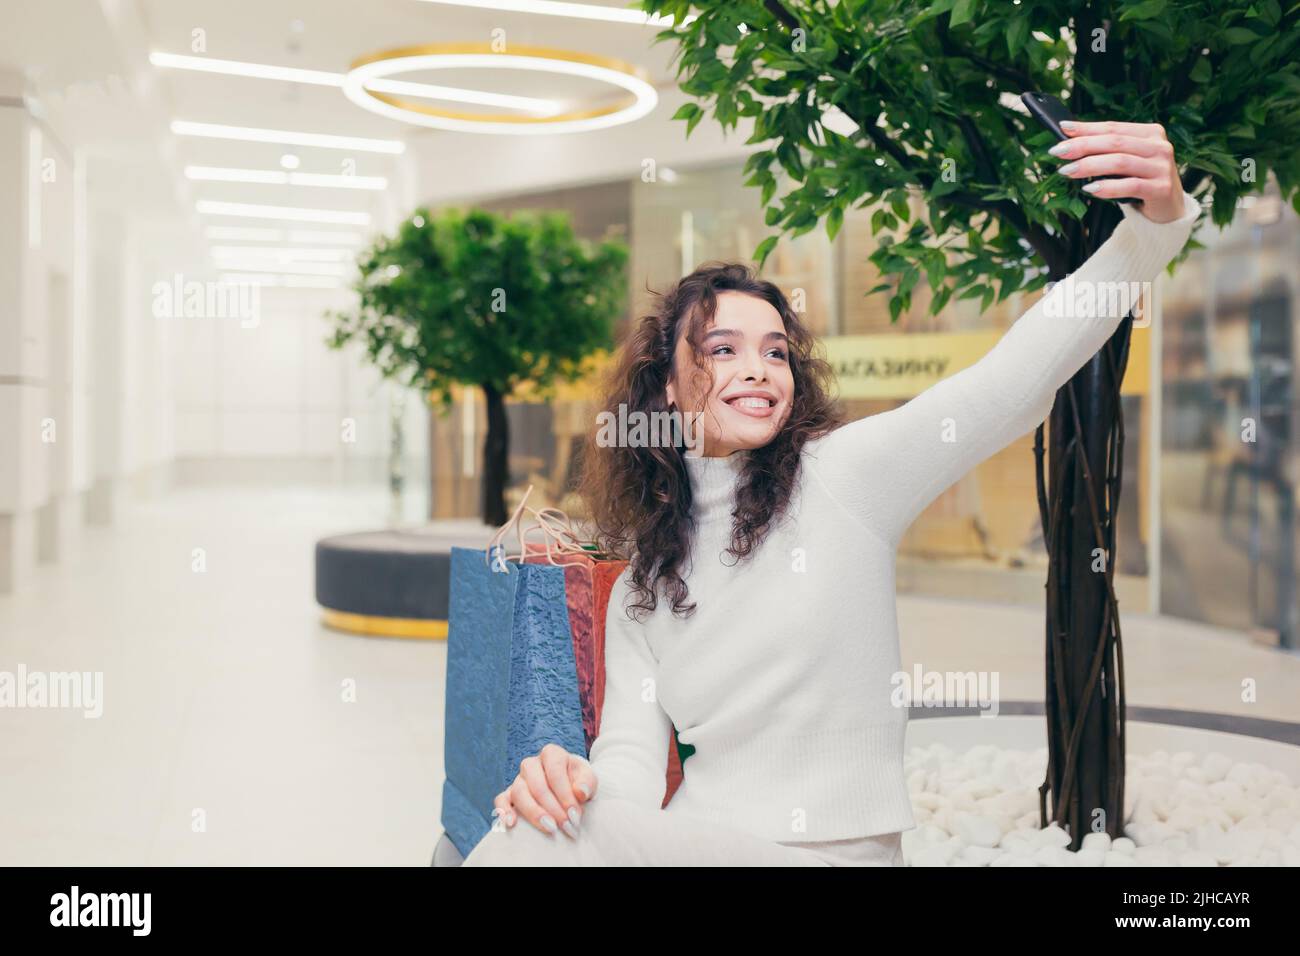 Felice e soddisfatto giovane bella ragazza curly, donna seduta su una panchina nel centro commerciale. Tiene un telefono in mano, prende un selfie. Sorrisi Foto Stock